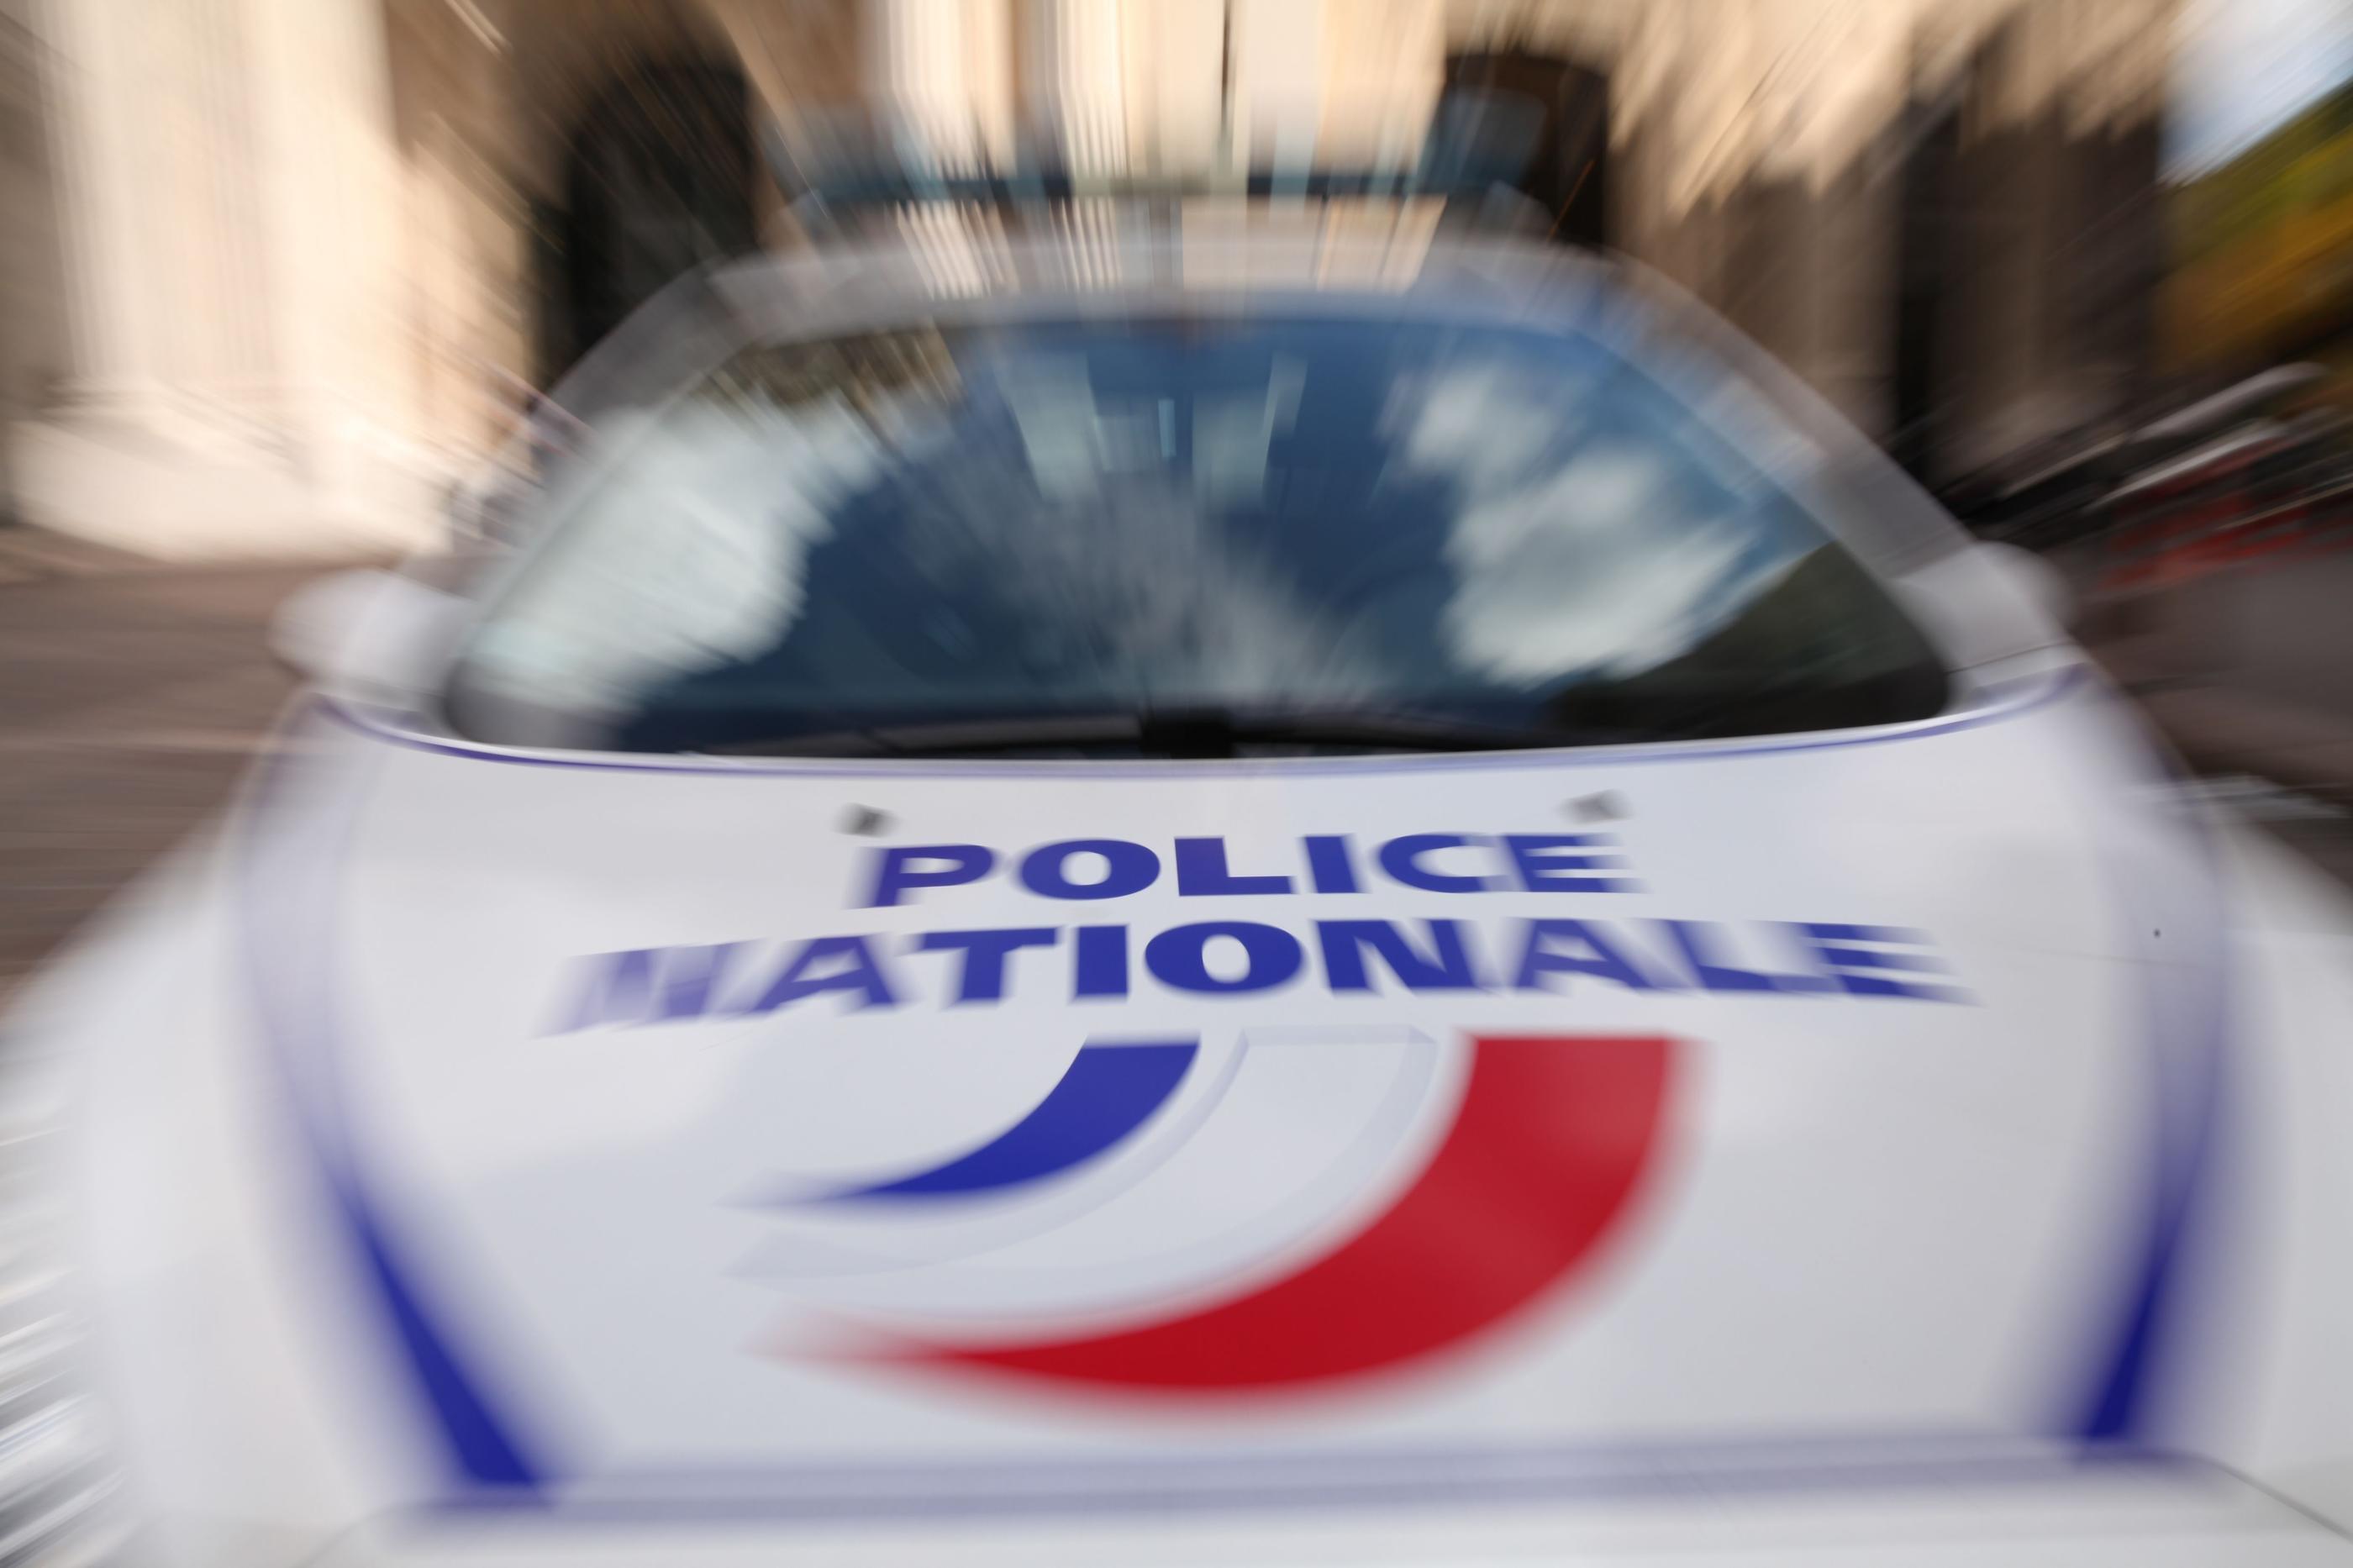 La brigade anticriminalité du commissariat de Fontenay-sous-Bois a interpellé quatre personnes et trouvé près de six kilos de drogue, rue des Rosettes à Fontenay-sous-Bois. LP/Olivier Boitet